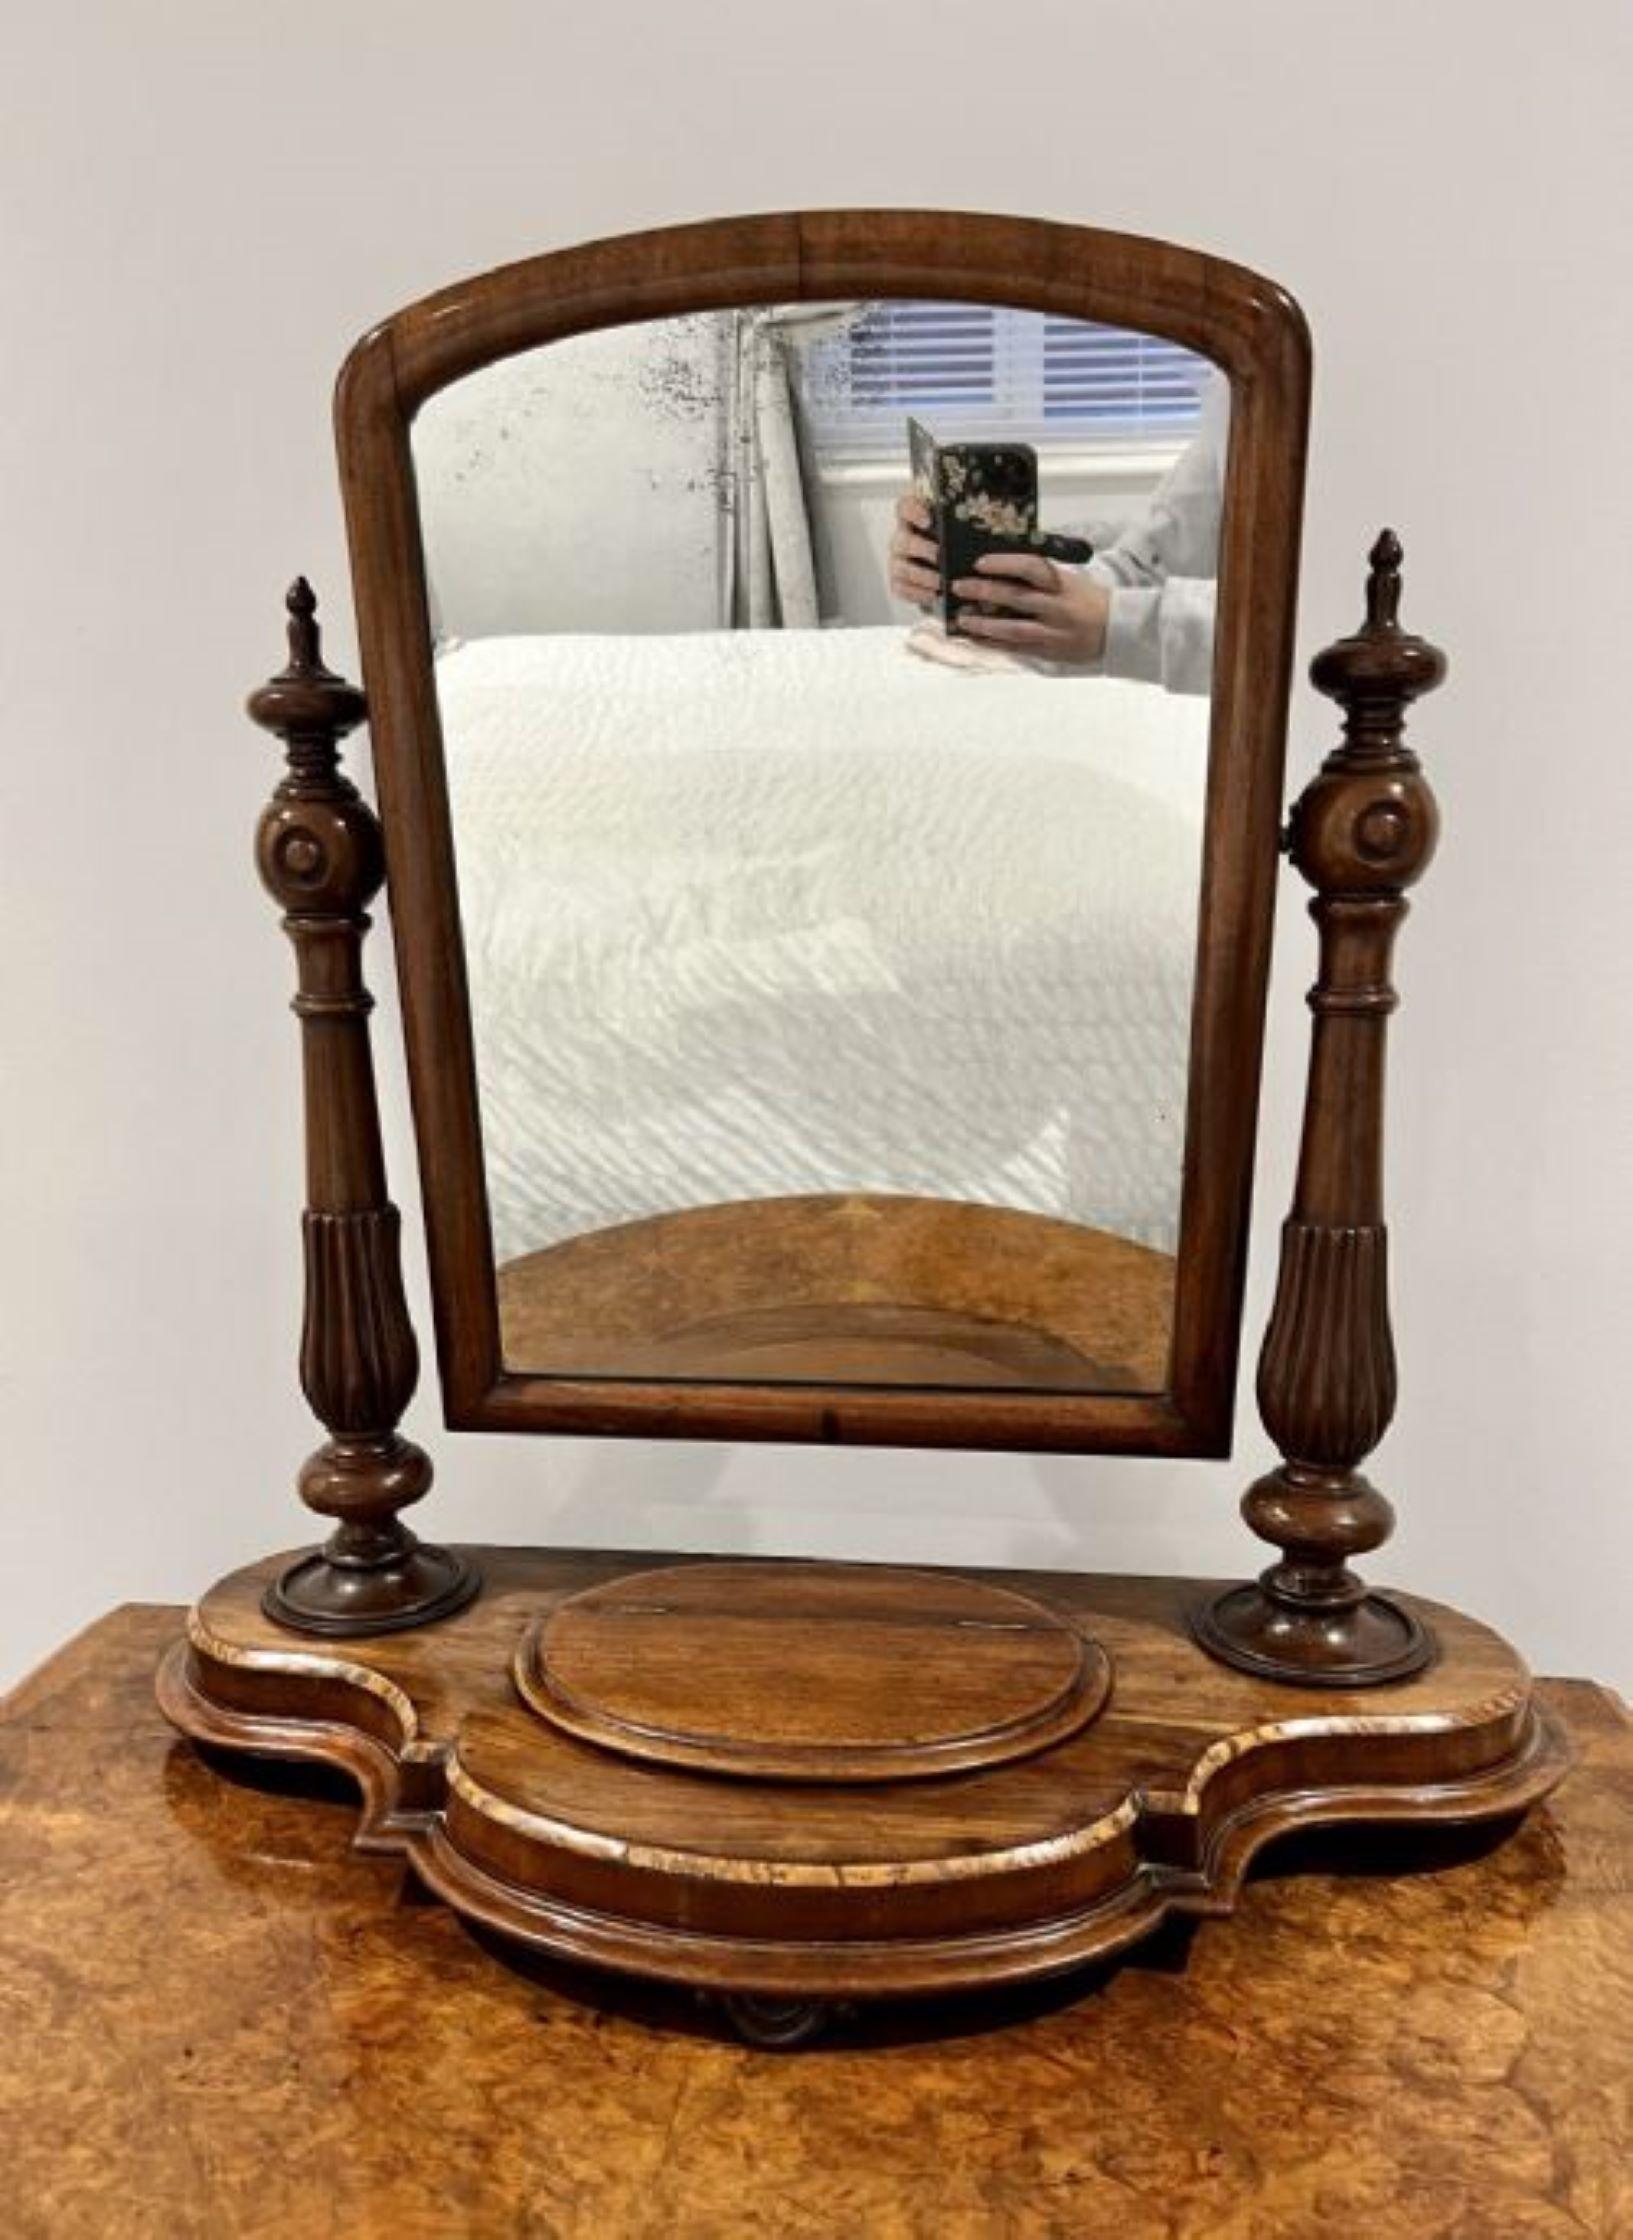 Miroir de coiffeuse antique en acajou de qualité victorienne avec un miroir inclinable réglable soutenu par des supports effilés tournés et sculptés en acajou reposant sur une base en acajou en forme de serpentin avec un couvercle ovale à soulever